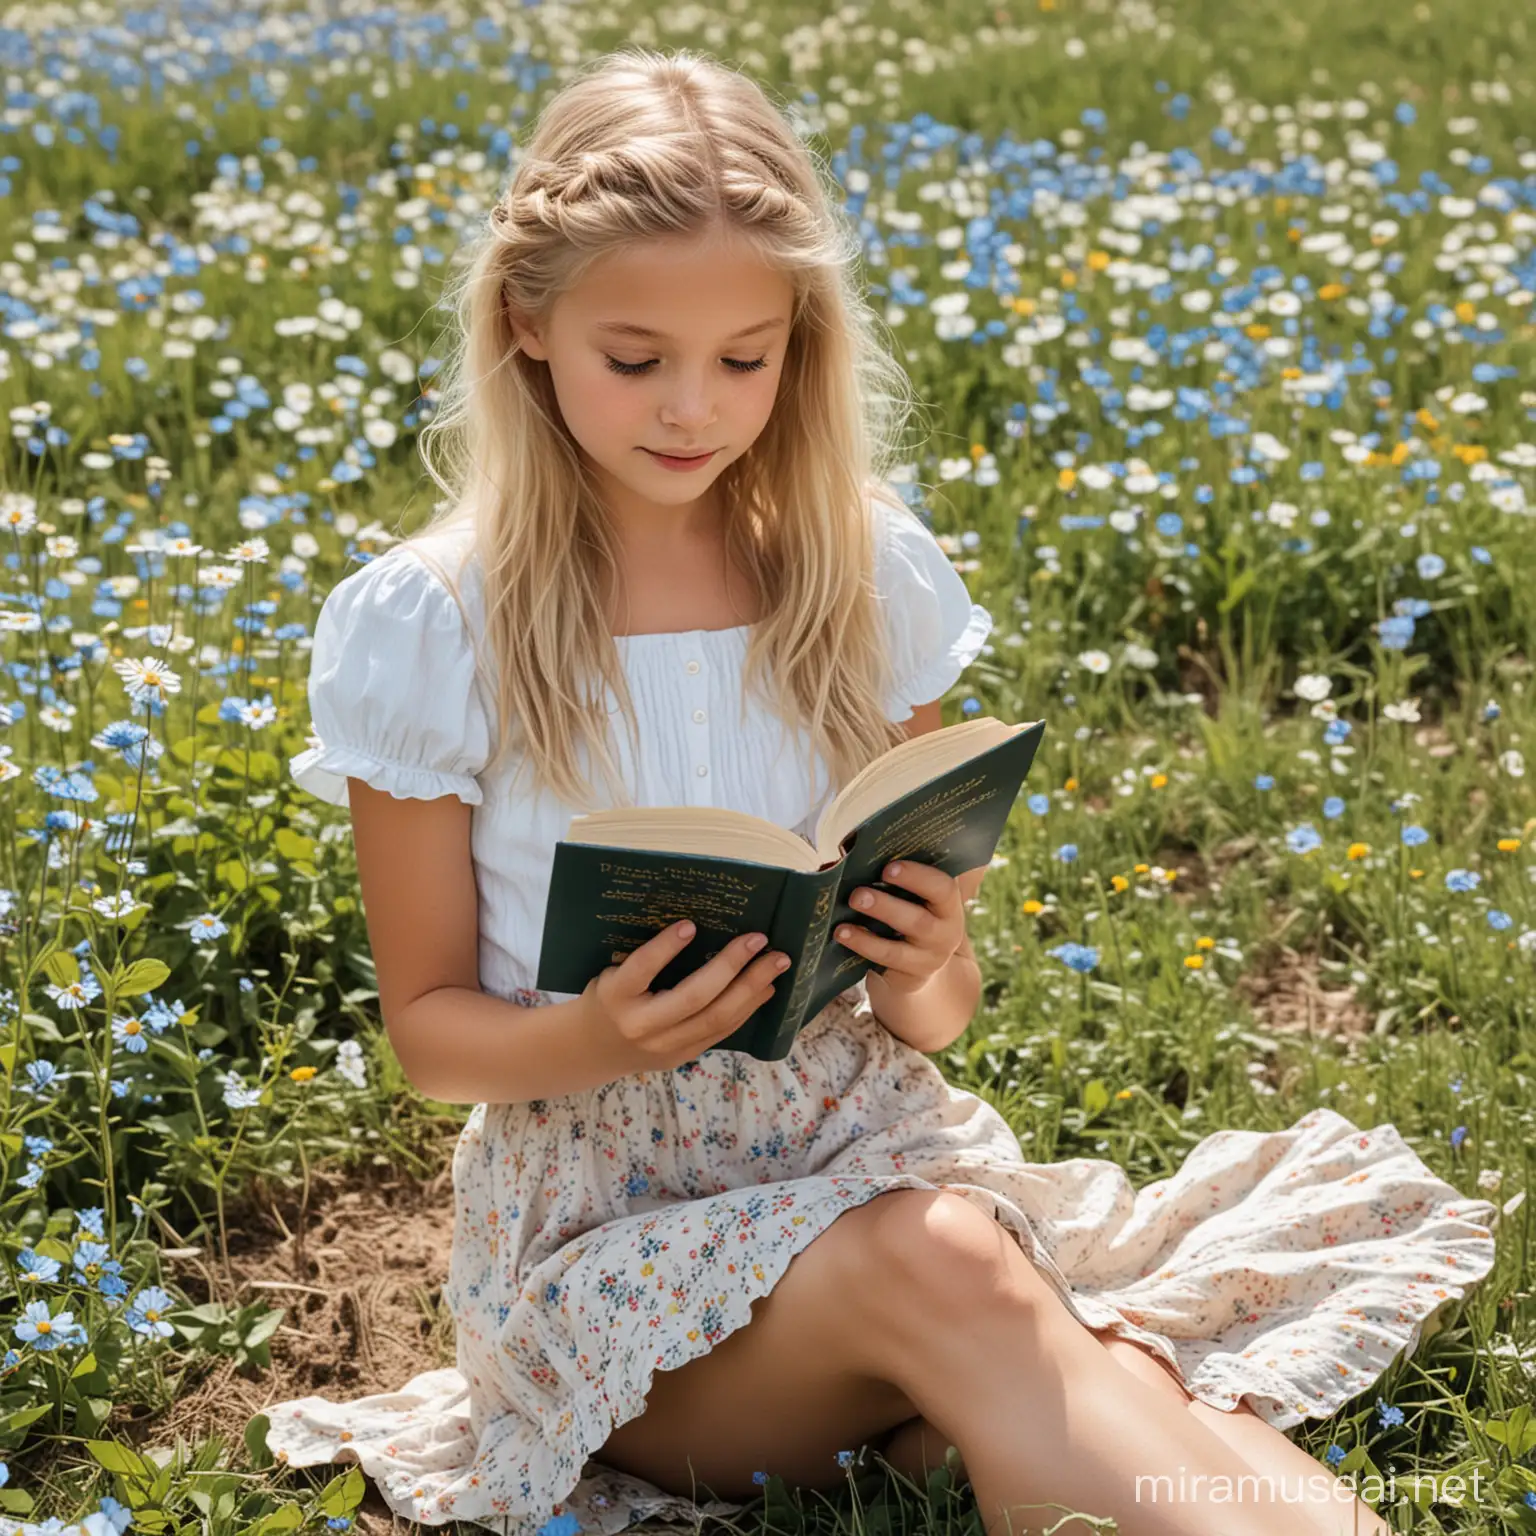 Blonde Girl Reading Book in Flower Field